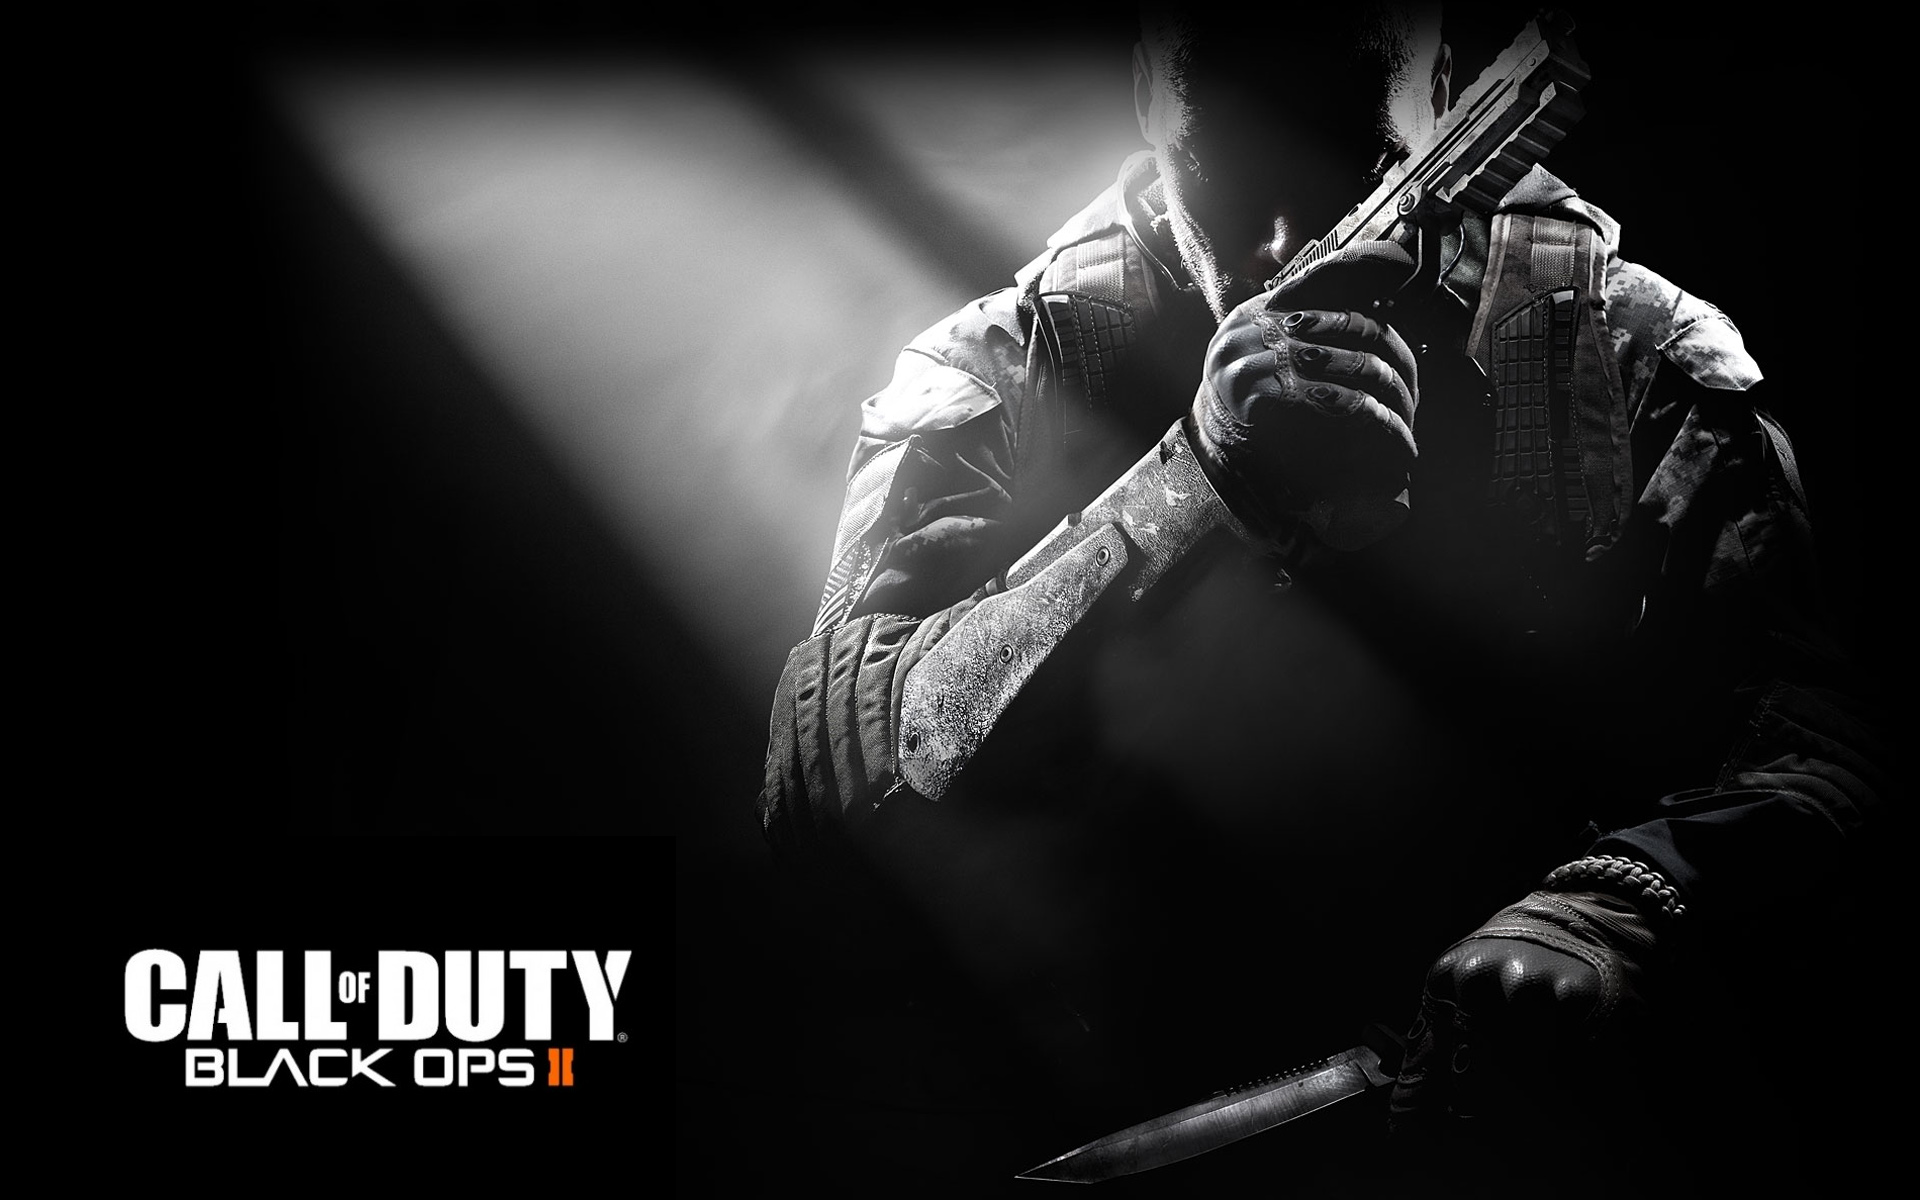 Description Call Of Duty Black Ops Wallpaper Is A Hi Res